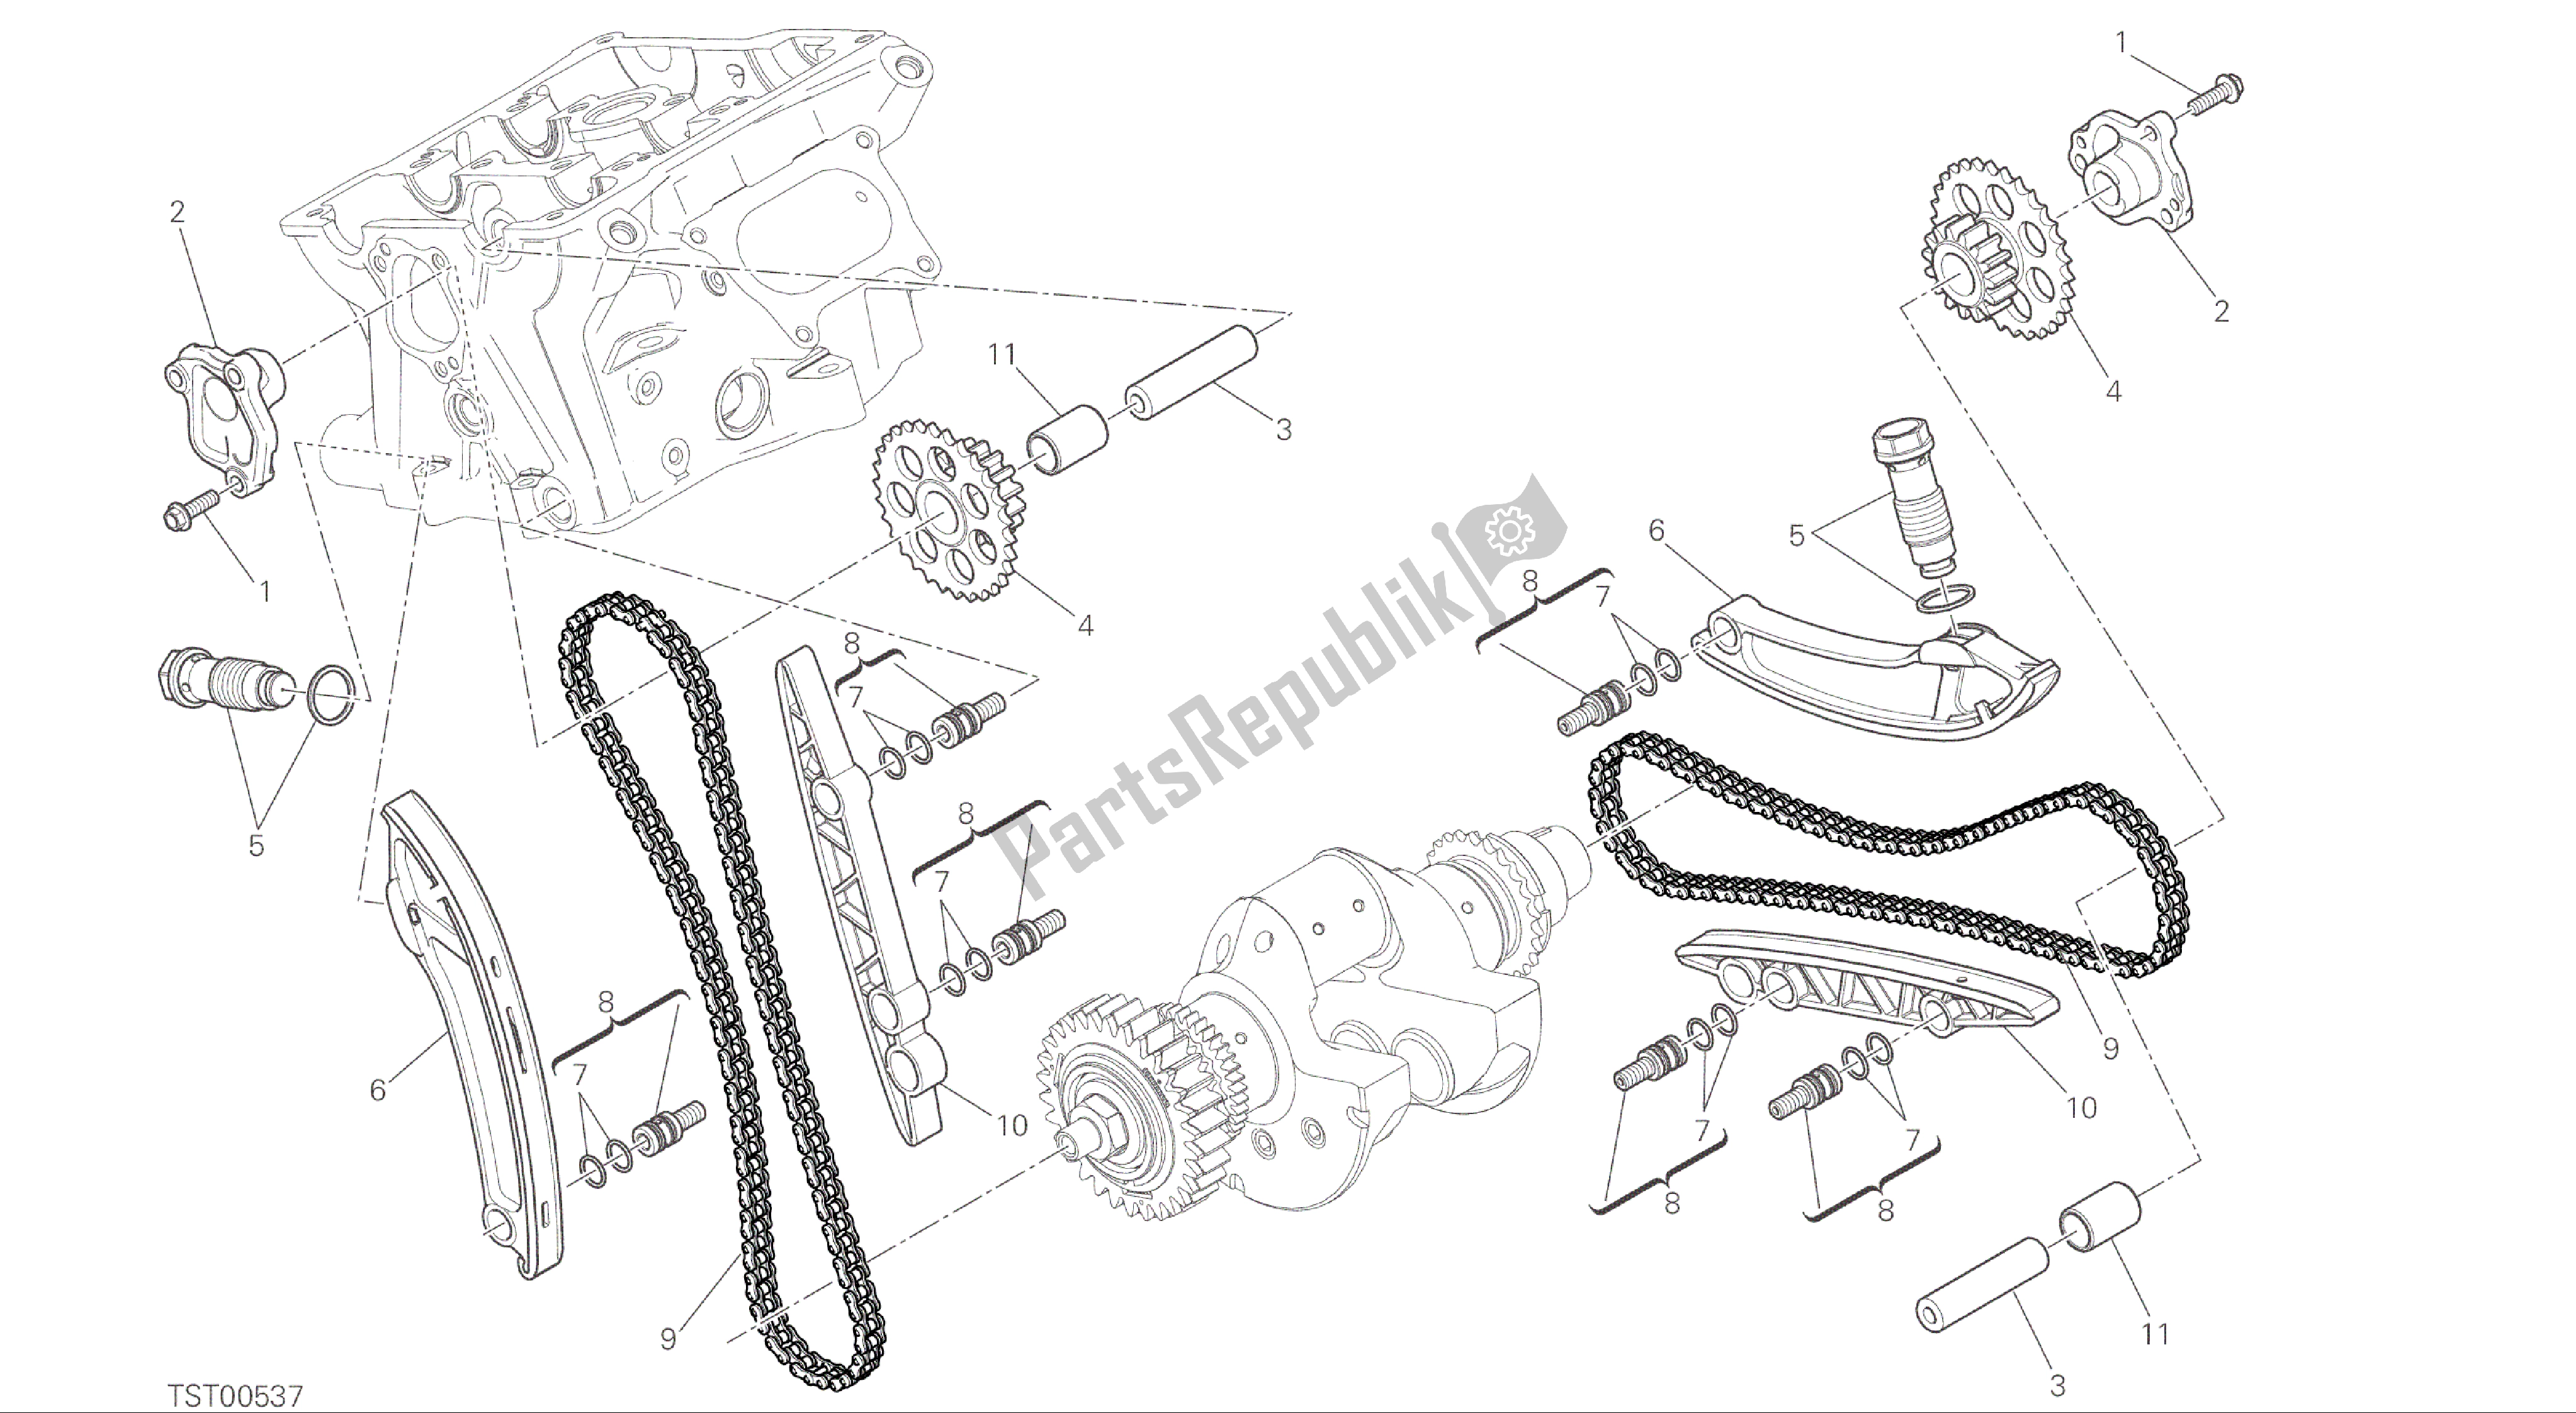 Alle onderdelen voor de Tekening 008 - Distribuzione [mod: 1299; Xst: Aus, Eur, Fra, Jap, Twn] Groep Engine van de Ducati Panigale ABS 1299 2016